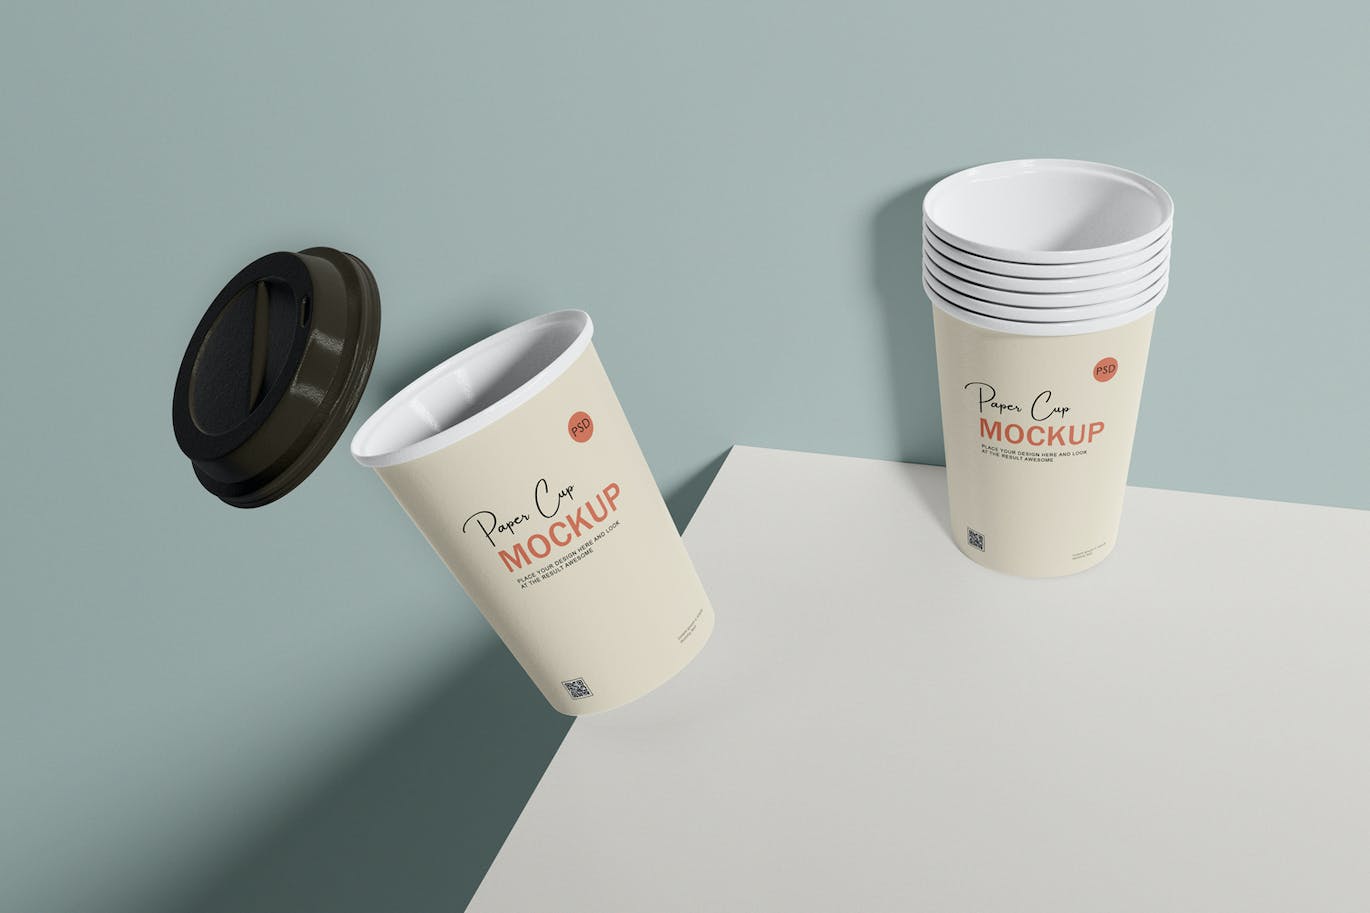 咖啡机咖啡杯包装设计样机 Coffee cup mockup with coffee machine 样机素材 第6张